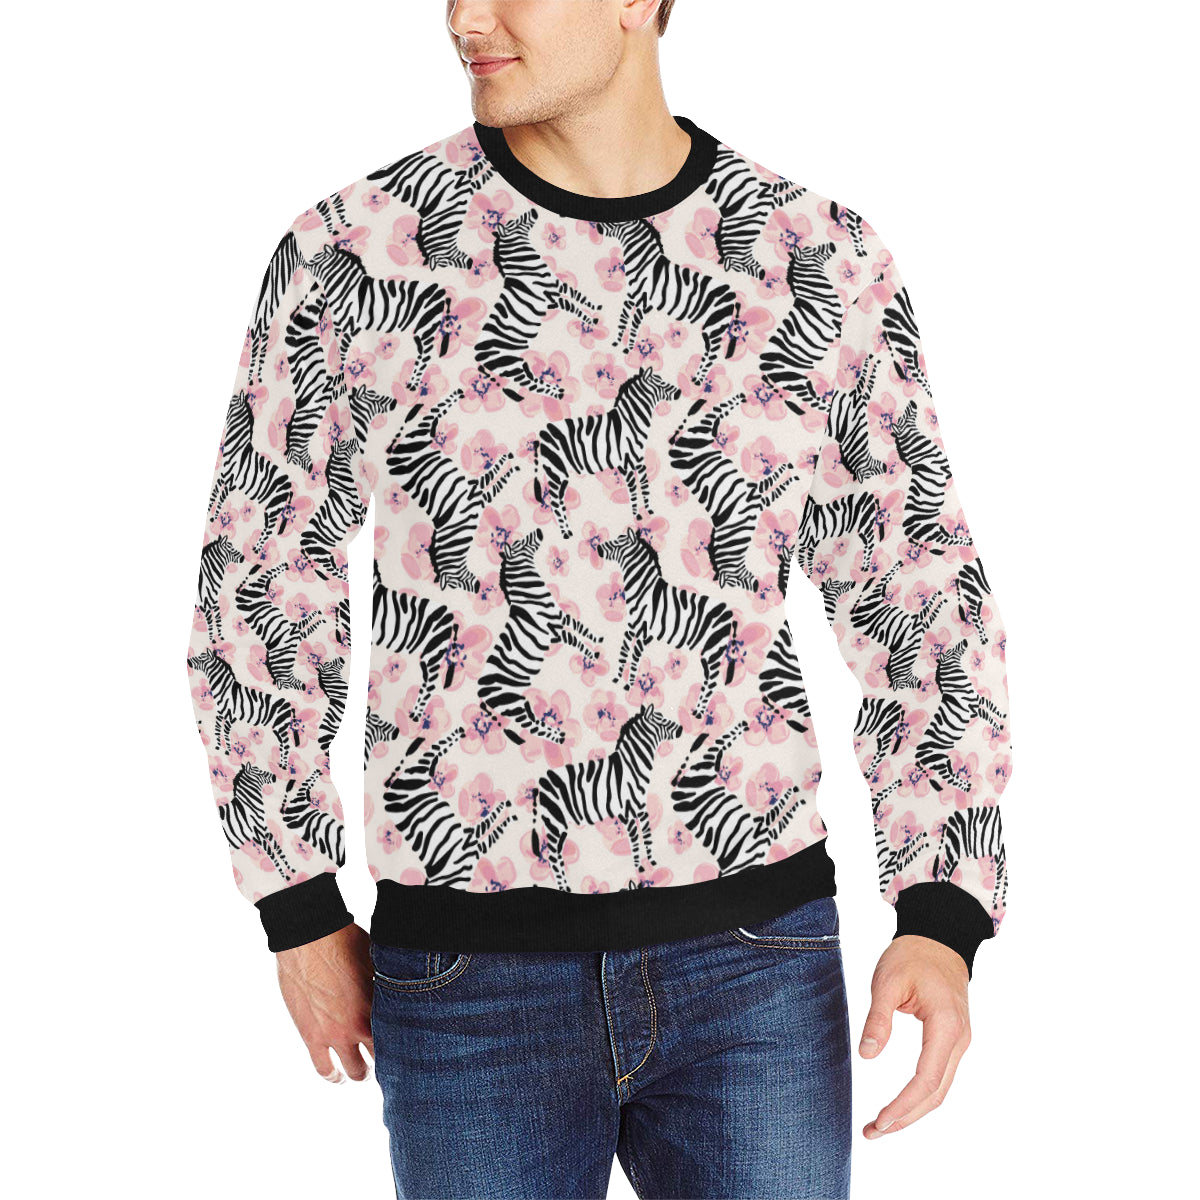 Zebra pink flower background Men’s Crew Neck Sweatshirt